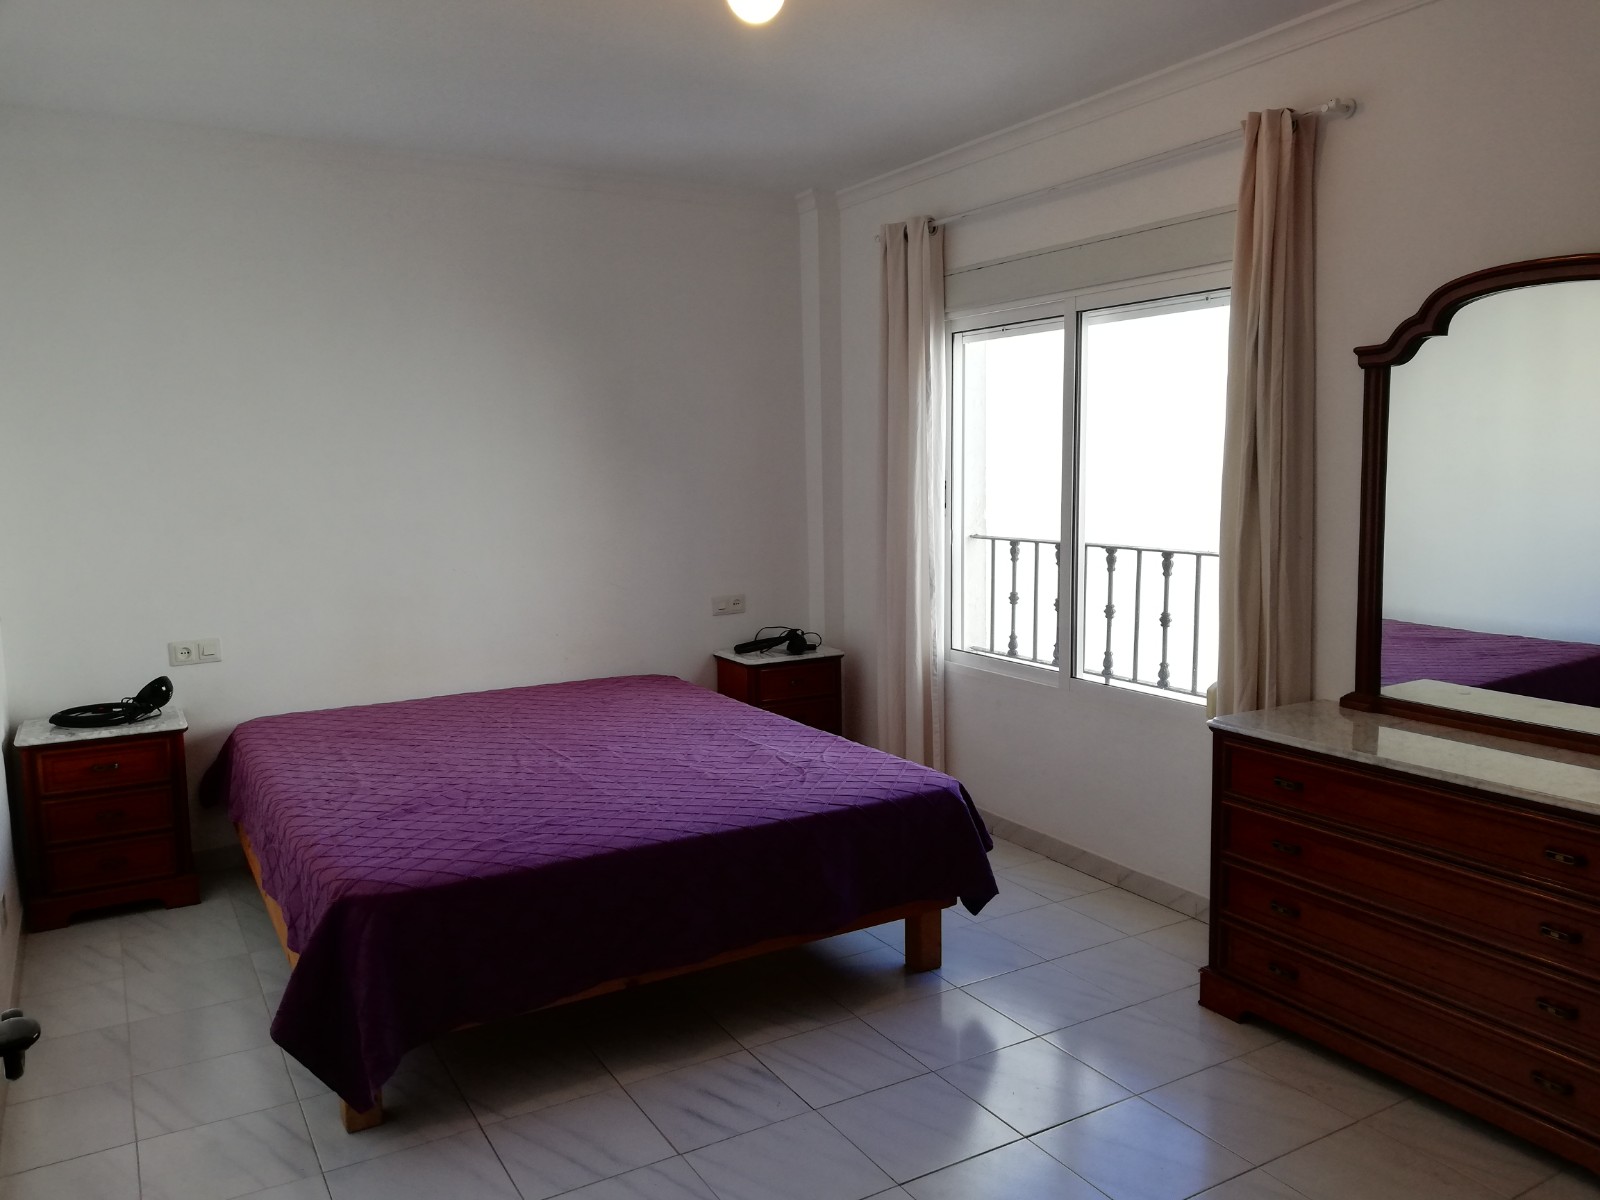 Ático de un dormitorio en alquiler en Sabinillas con vistas al mar - mibgroup.es